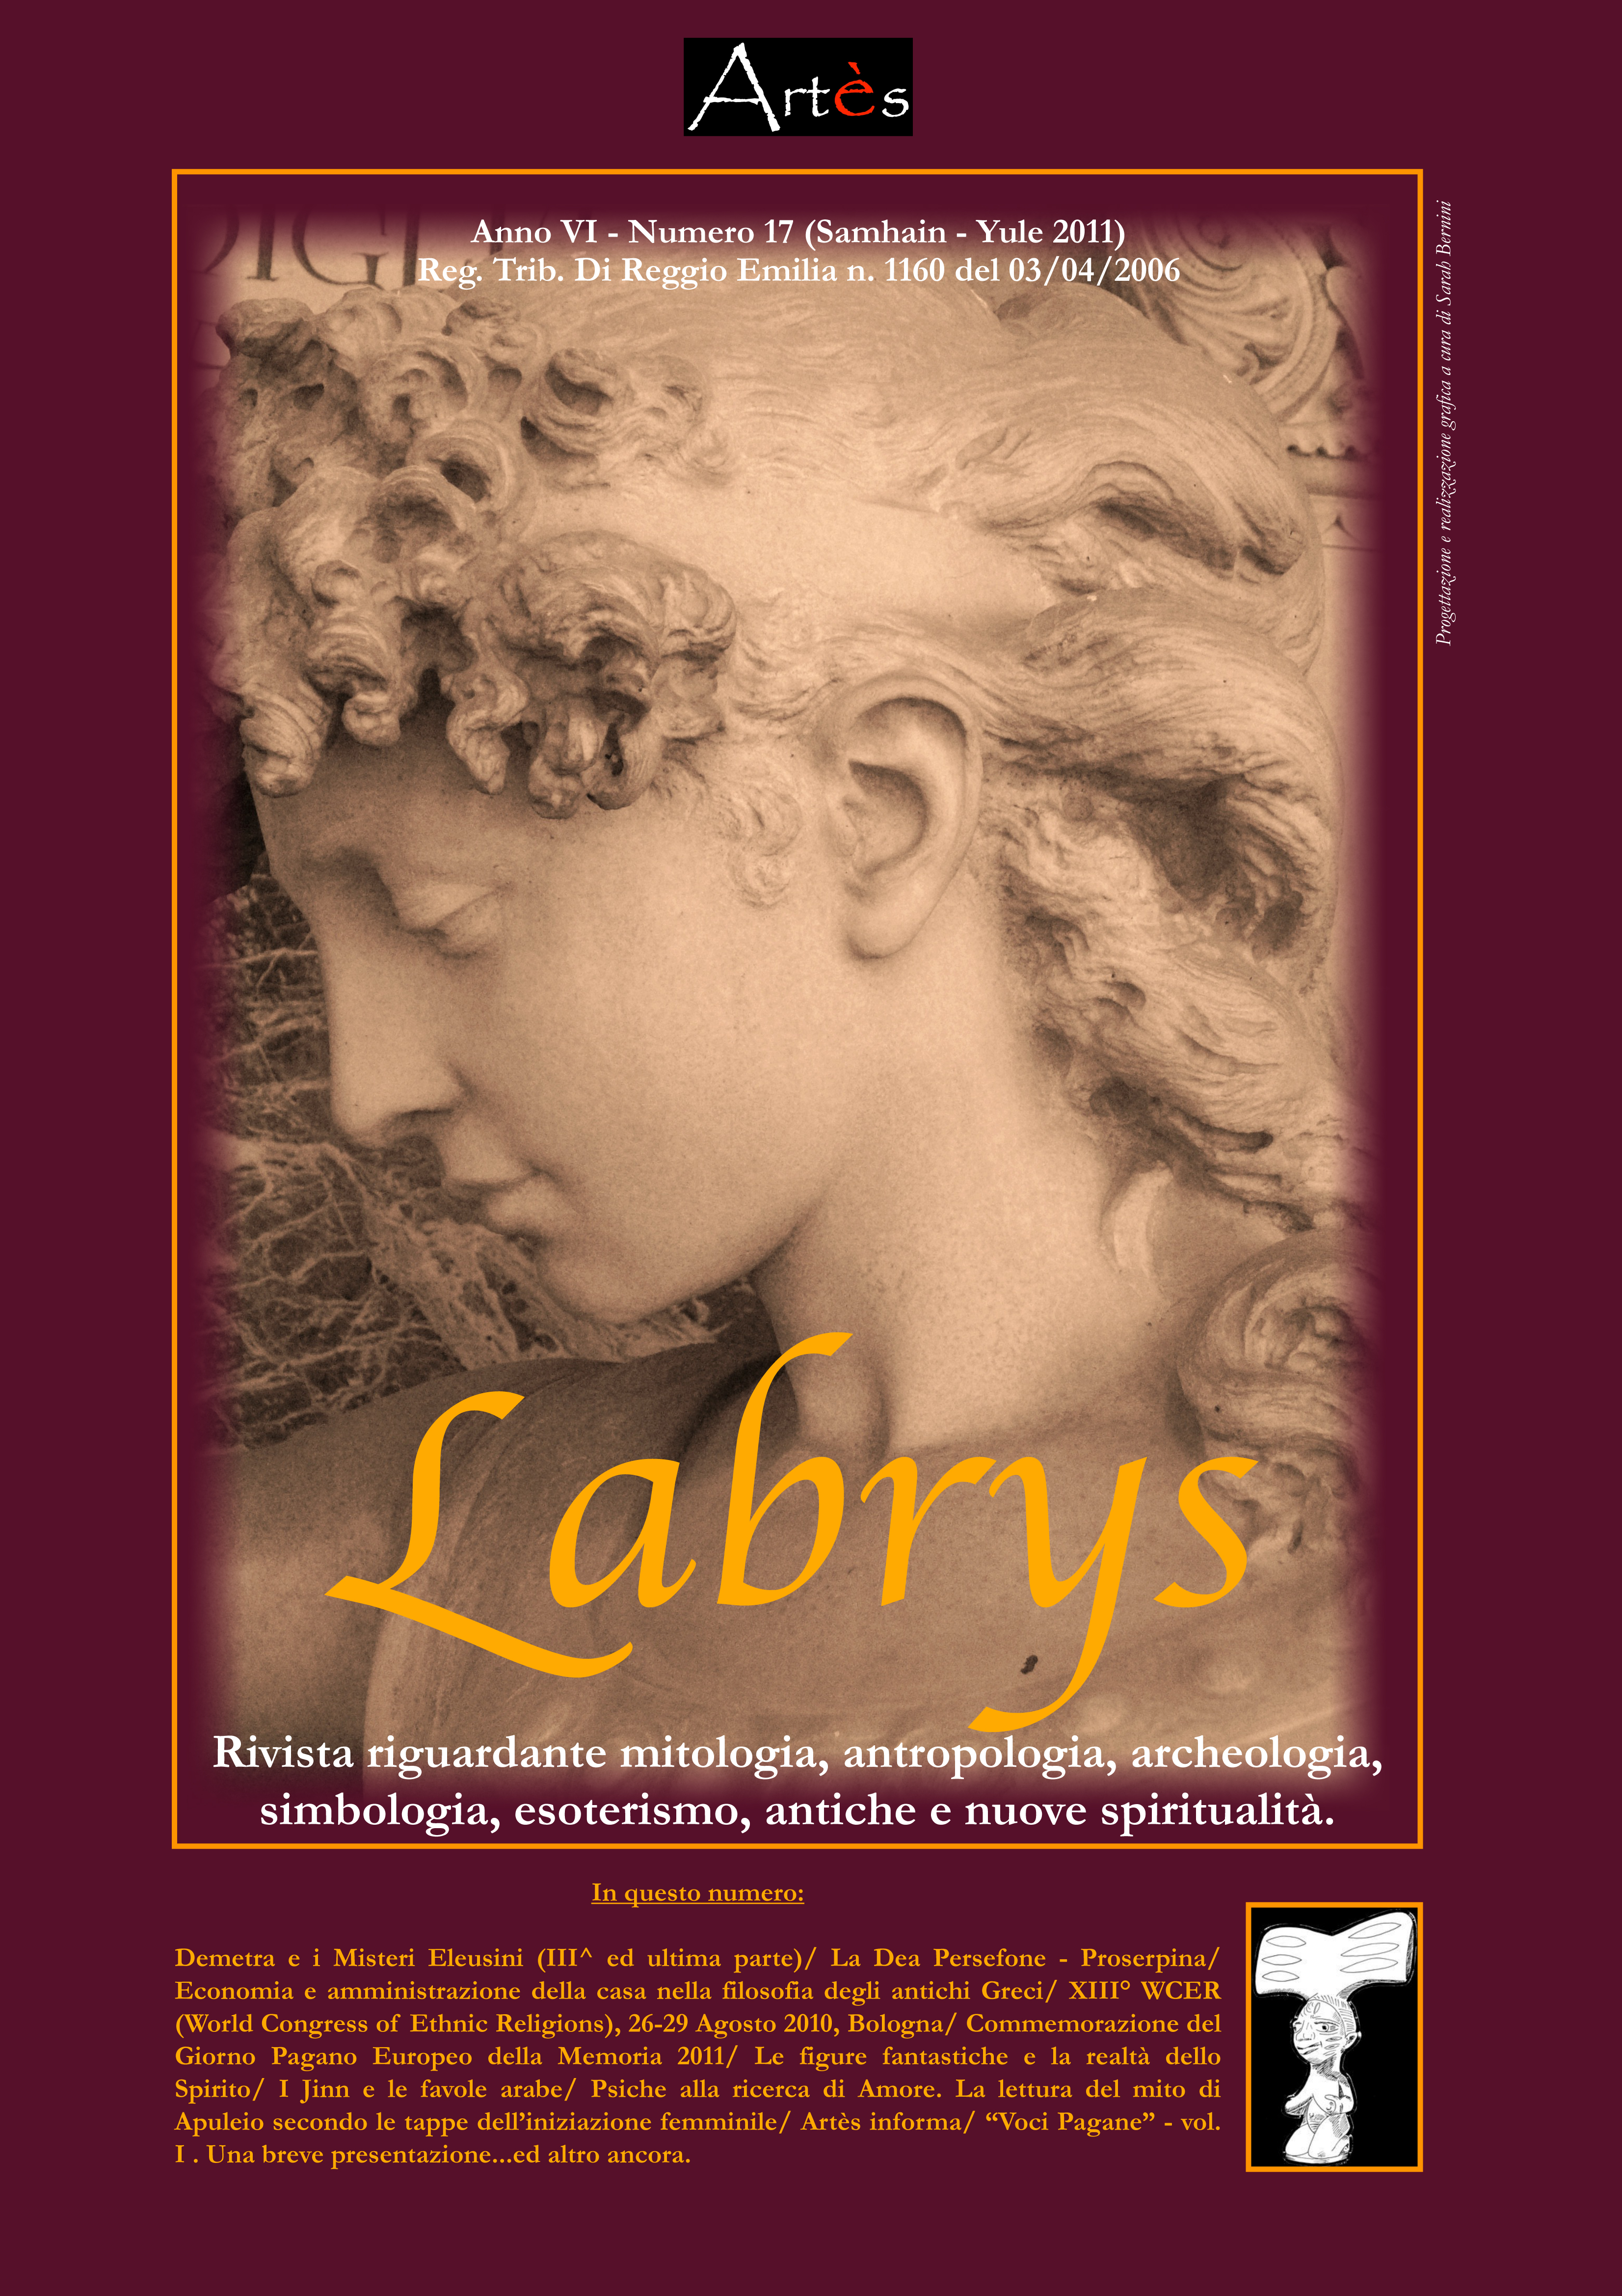 Copertina rivista Labrys 17